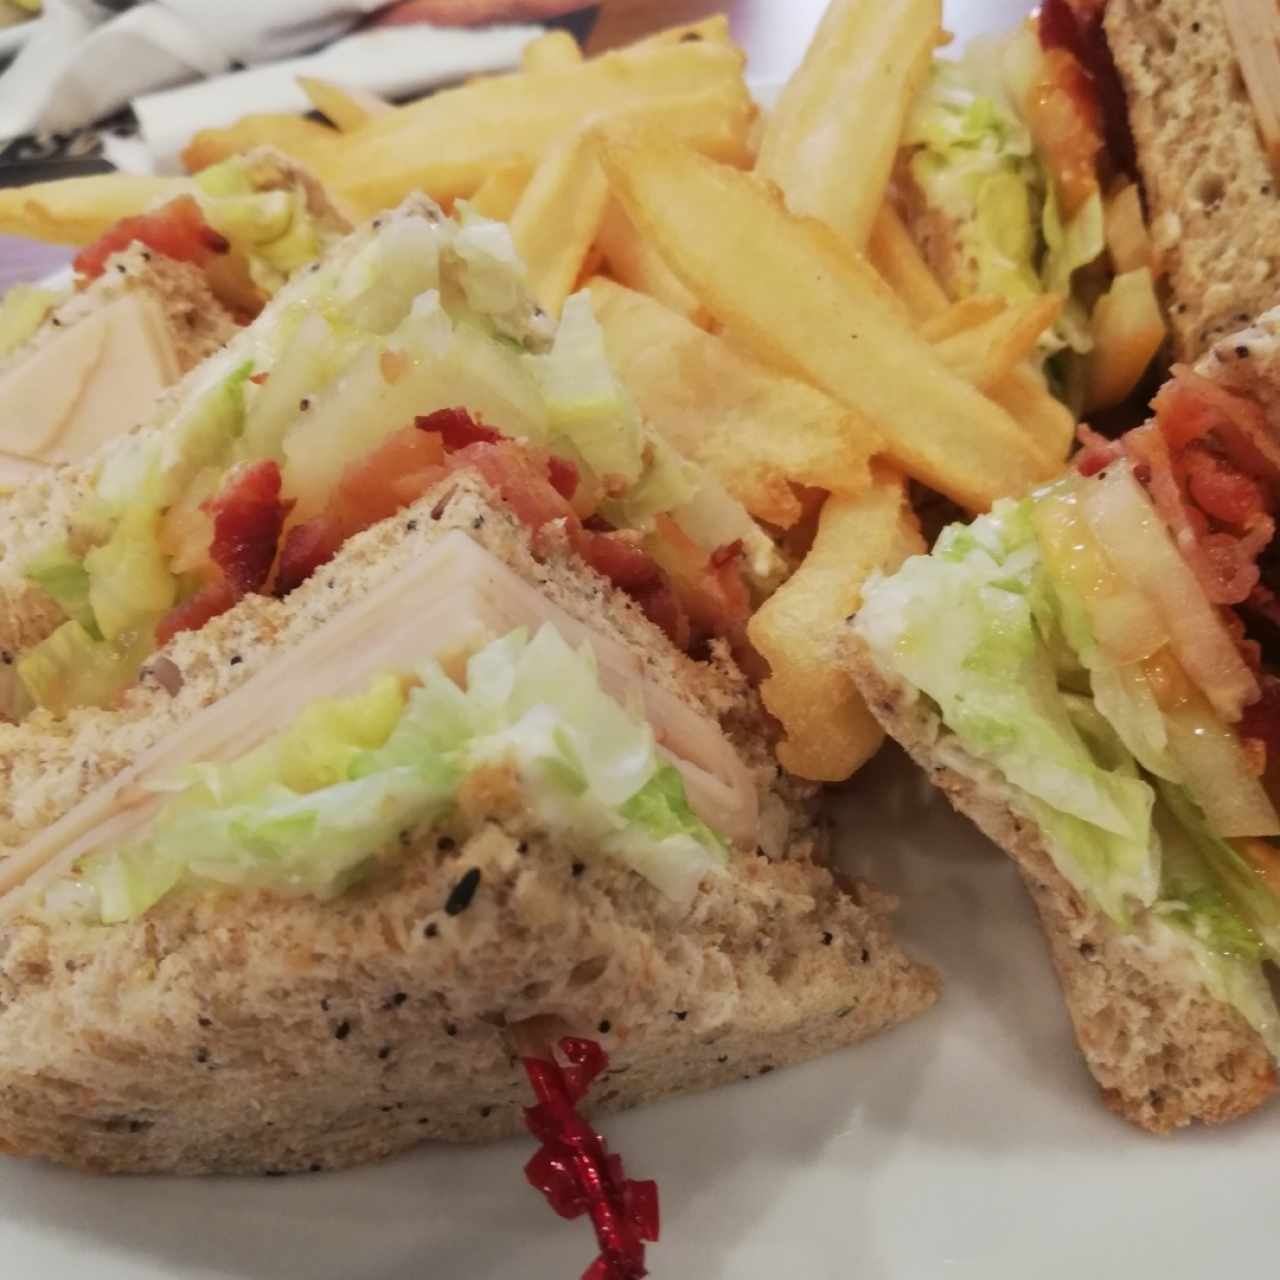 SÁNDWICHES - Club Sandwich